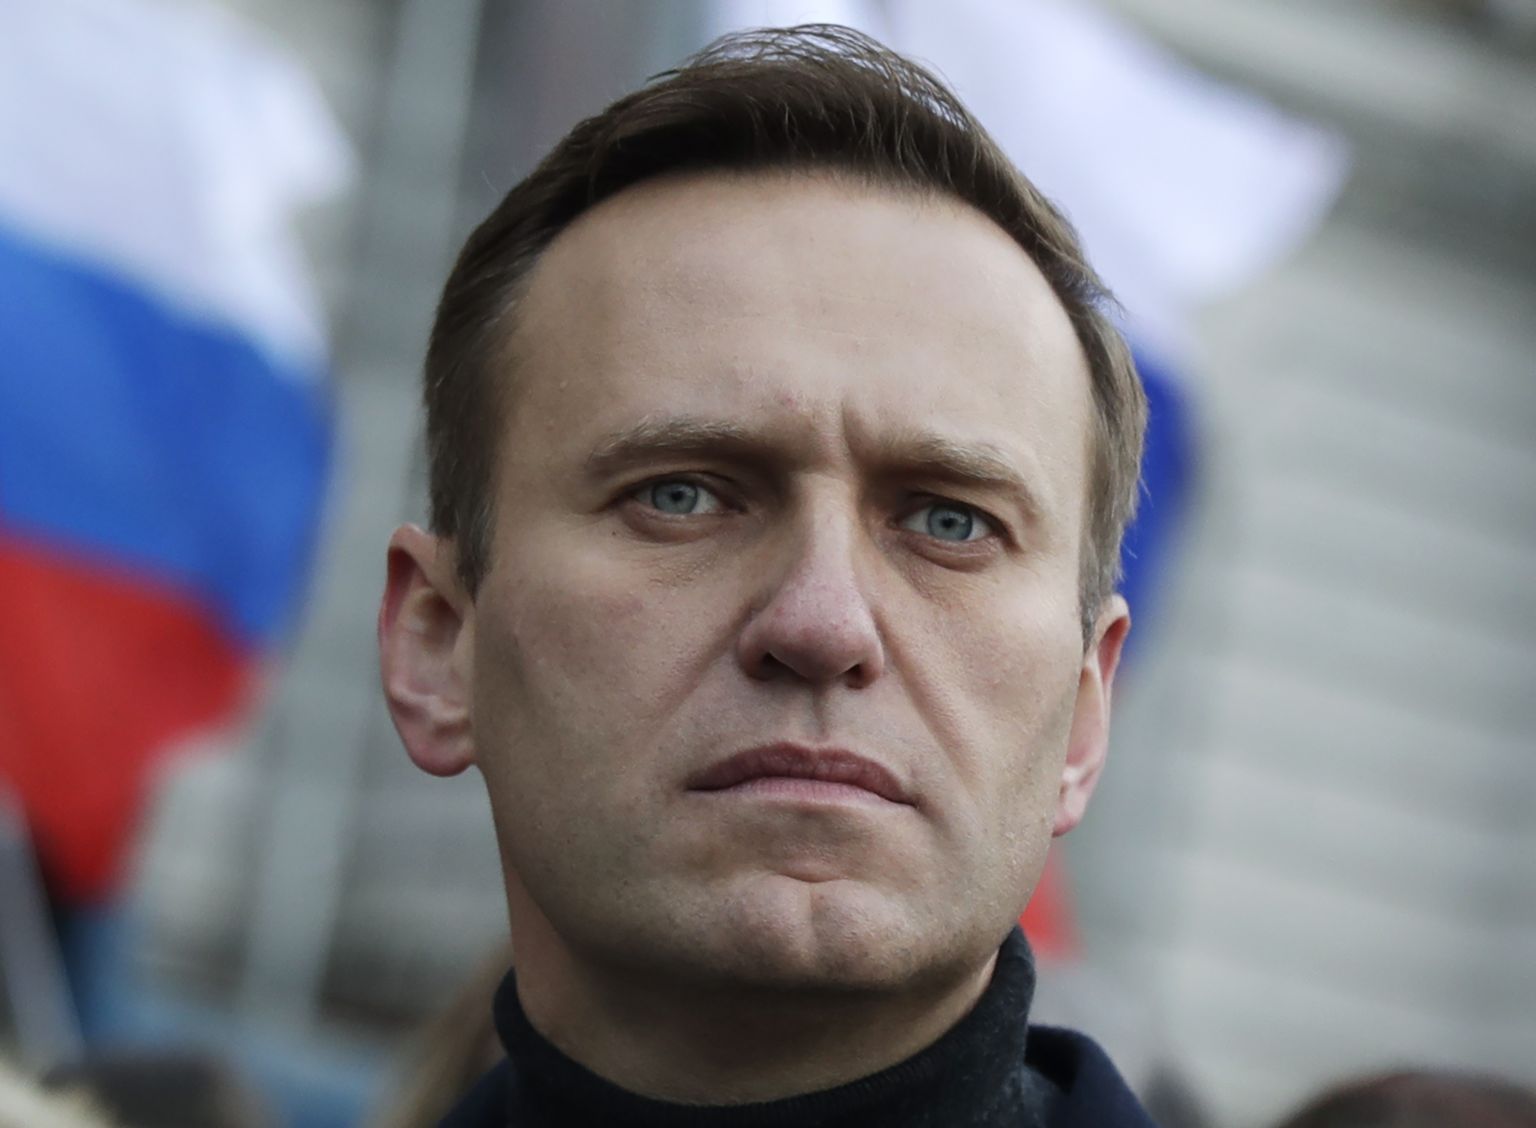 Krievijas opozicionārs Aleksejs Navaļnijs